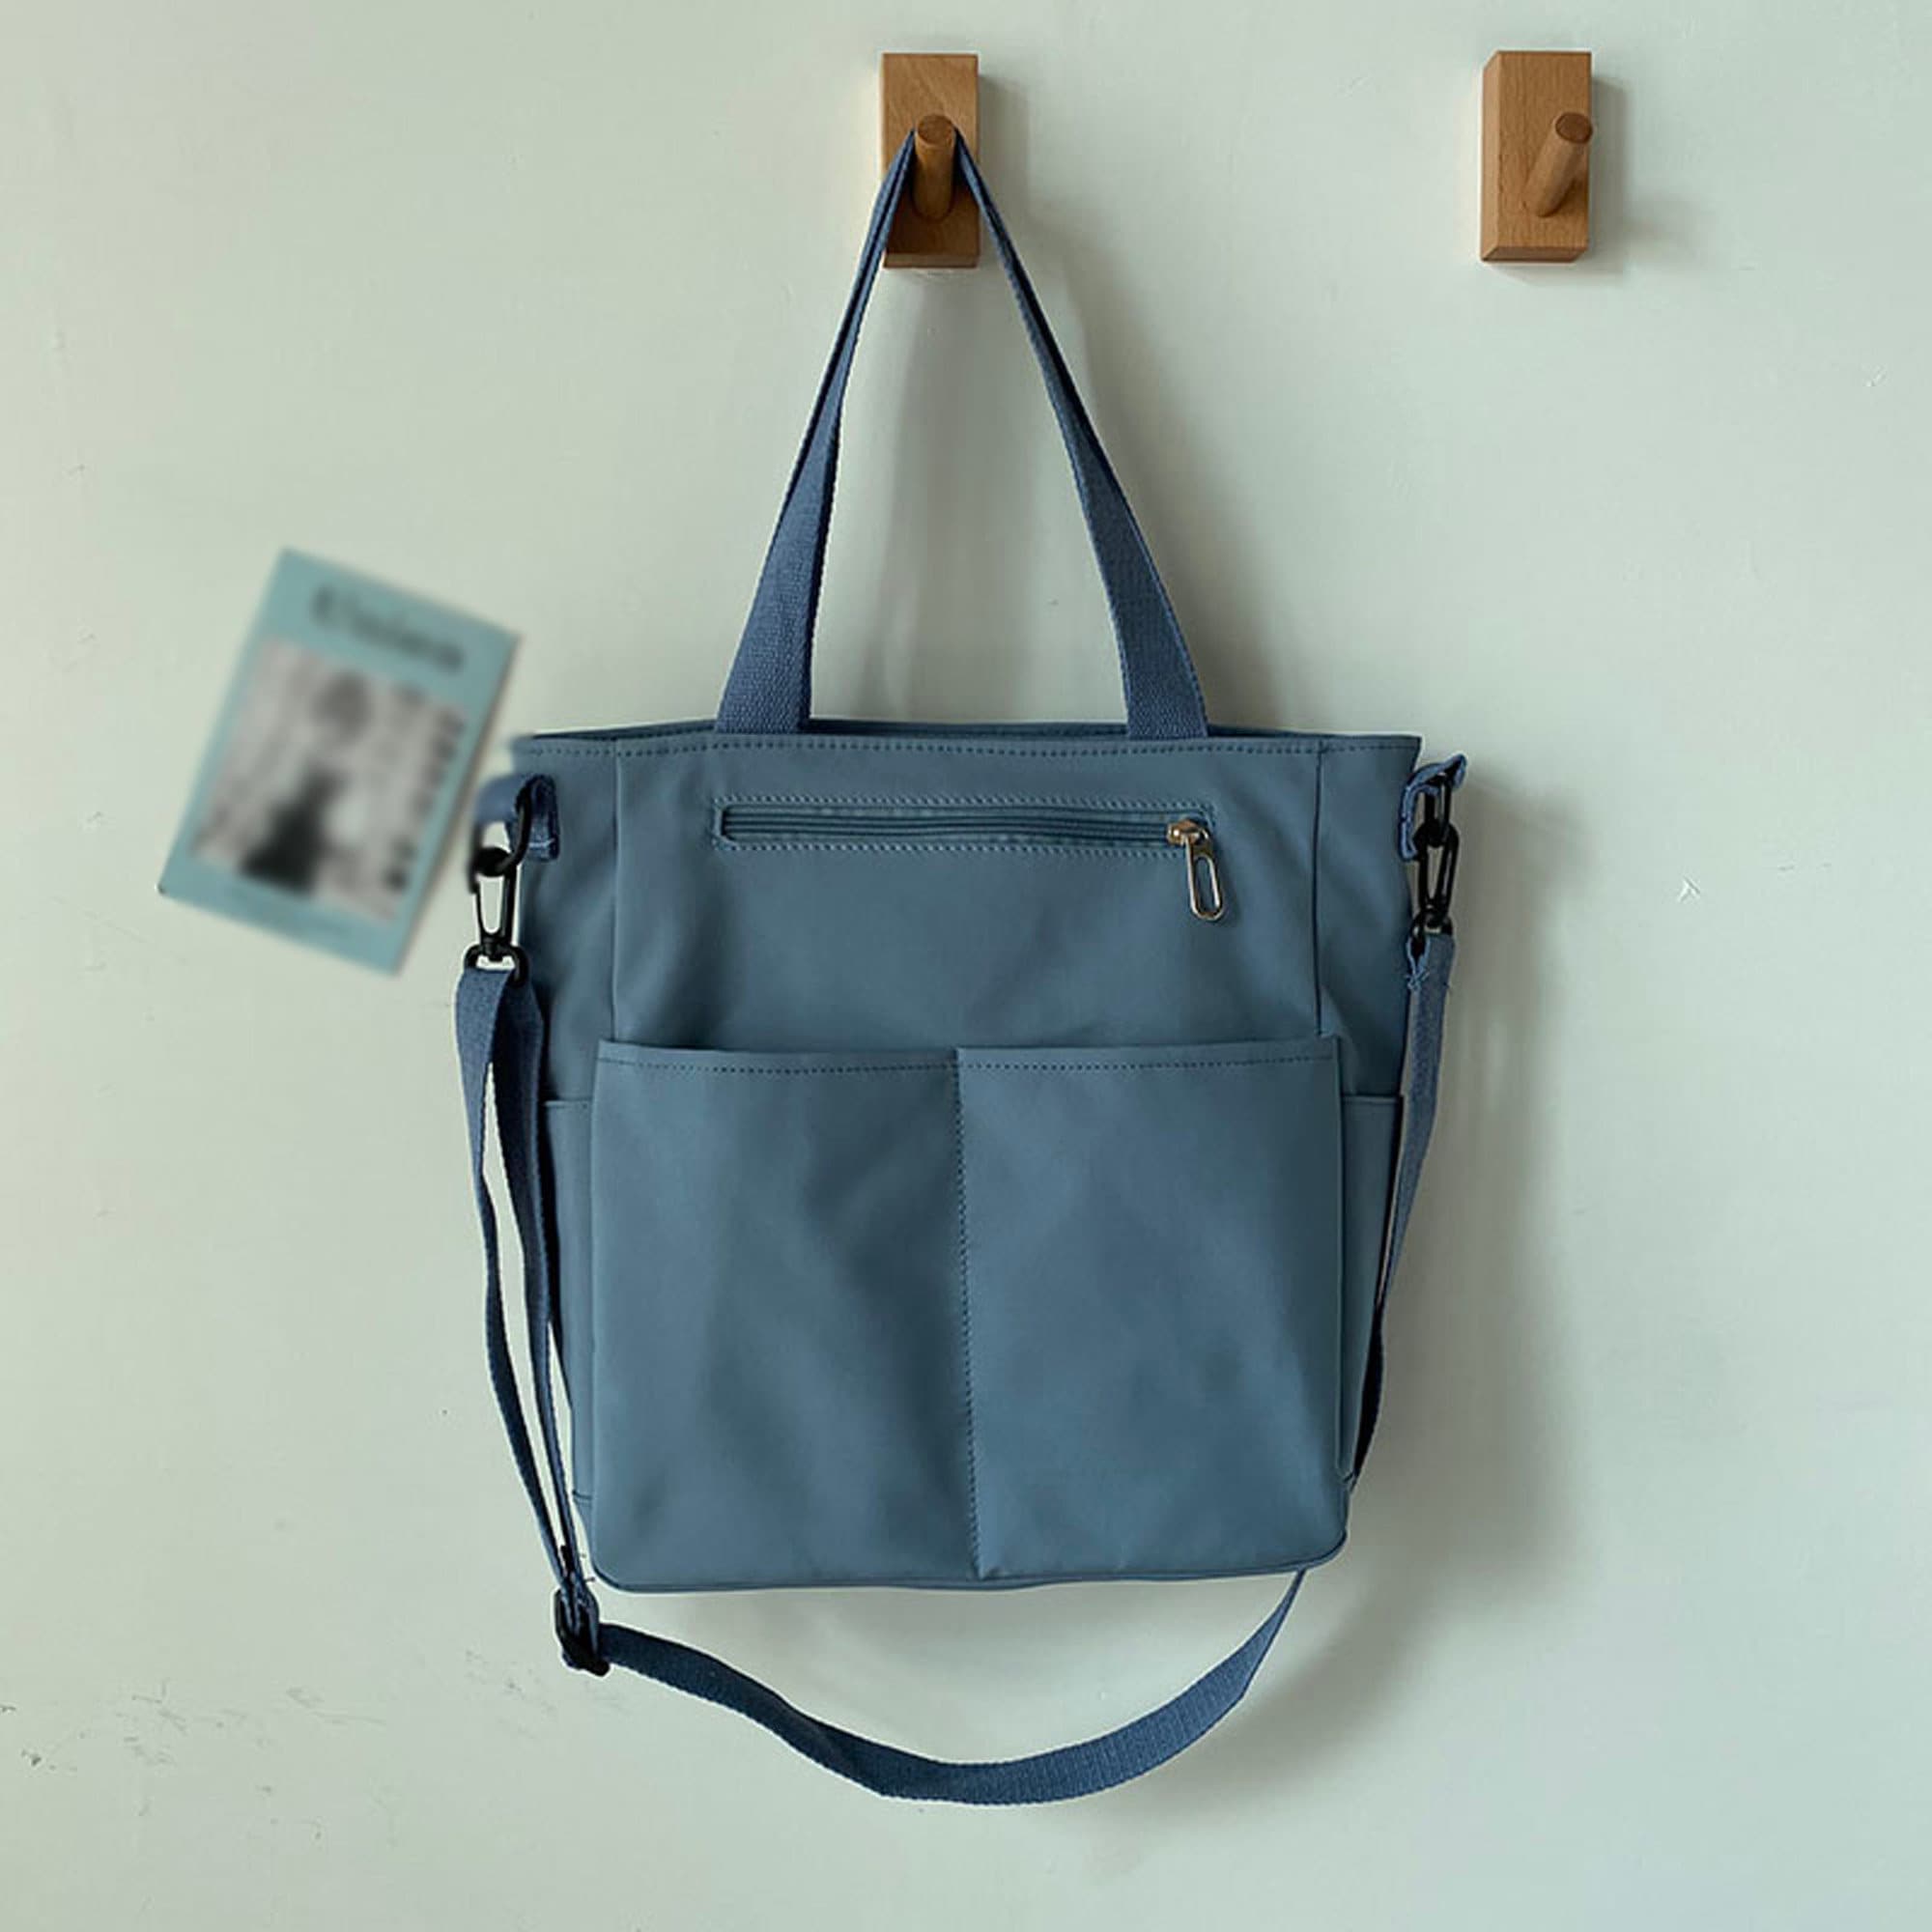 Blue Work Bag, Casual Work Tote Bag, Canvas Waterproof Tote Bag